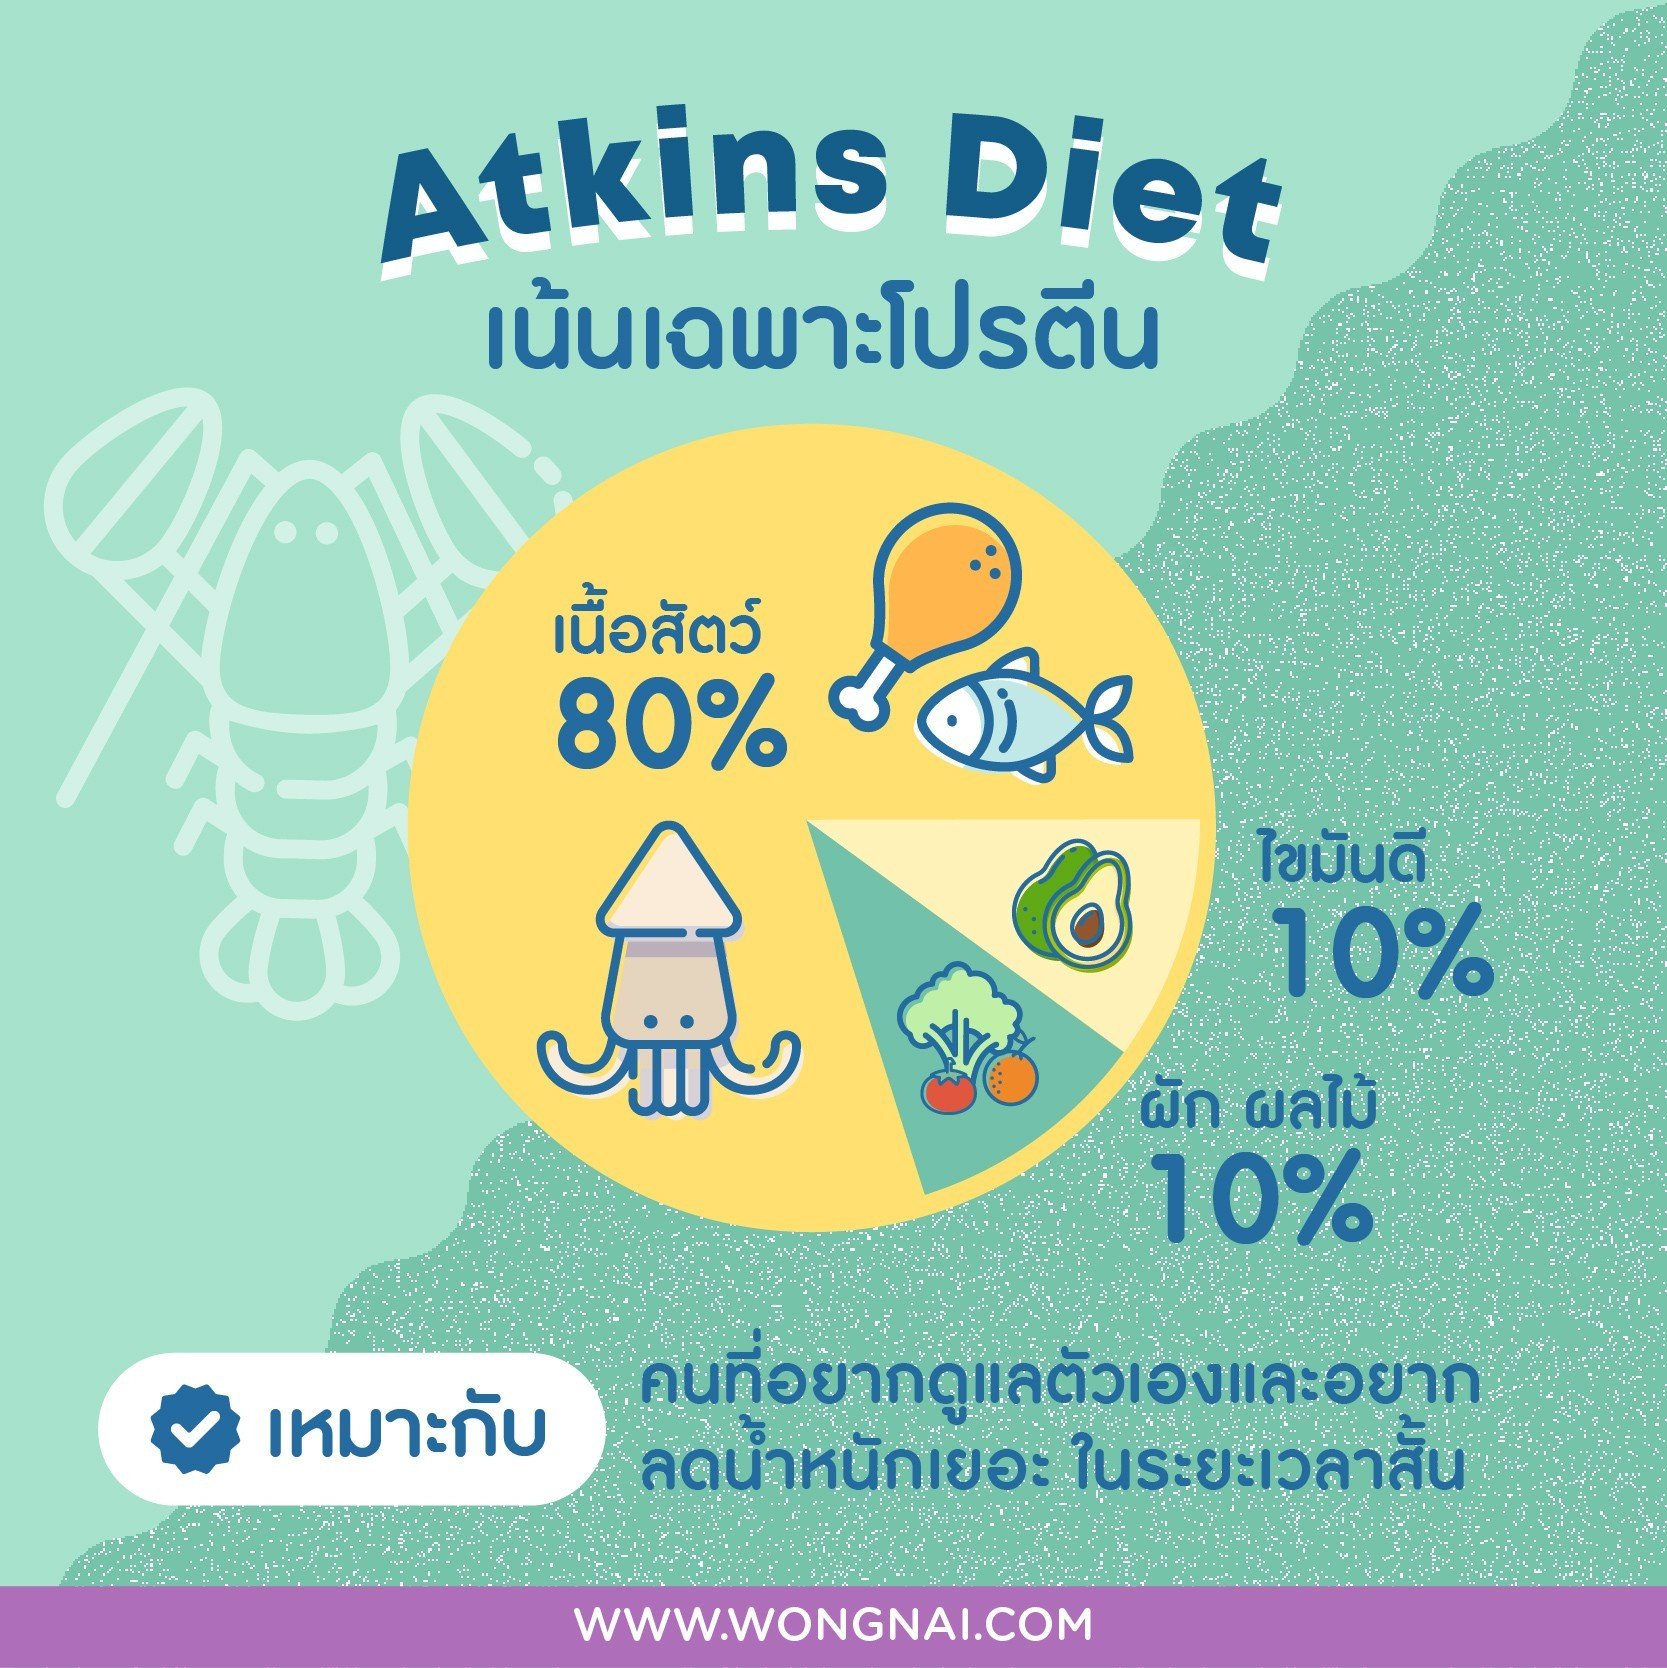 ลดน้ำหนัก Atkins Diet กินเนื้อไม่กินแป้ง 